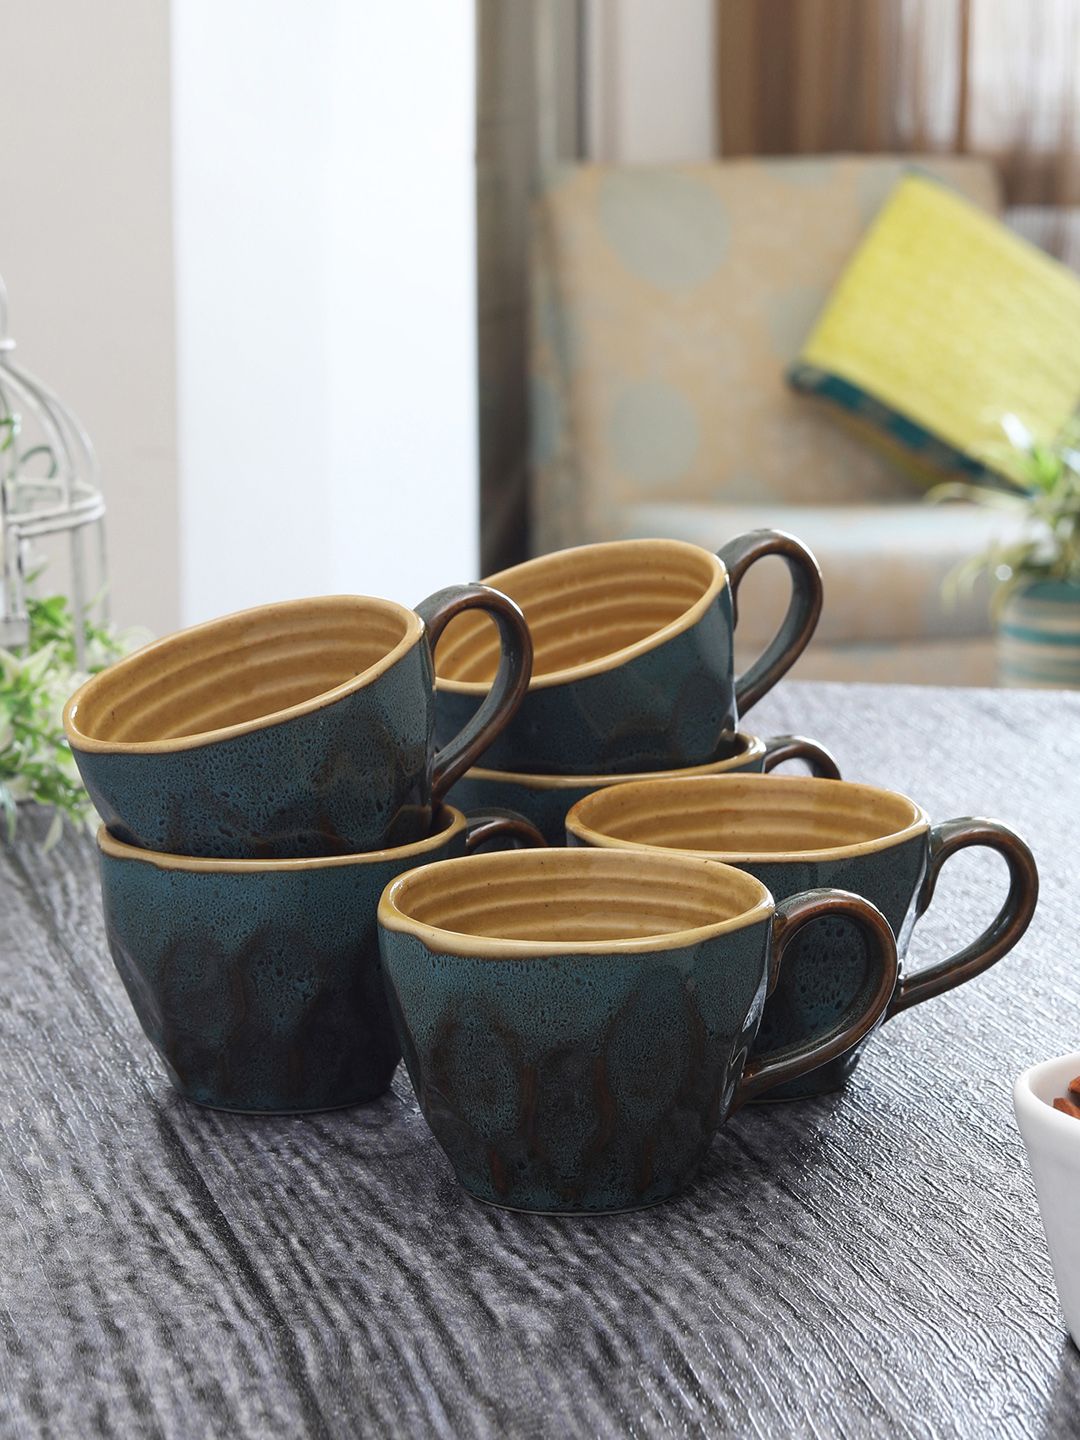 MIAH Decor Set of 6 Green & Mustard Yellow Glazed Coffee Mugs Price in India